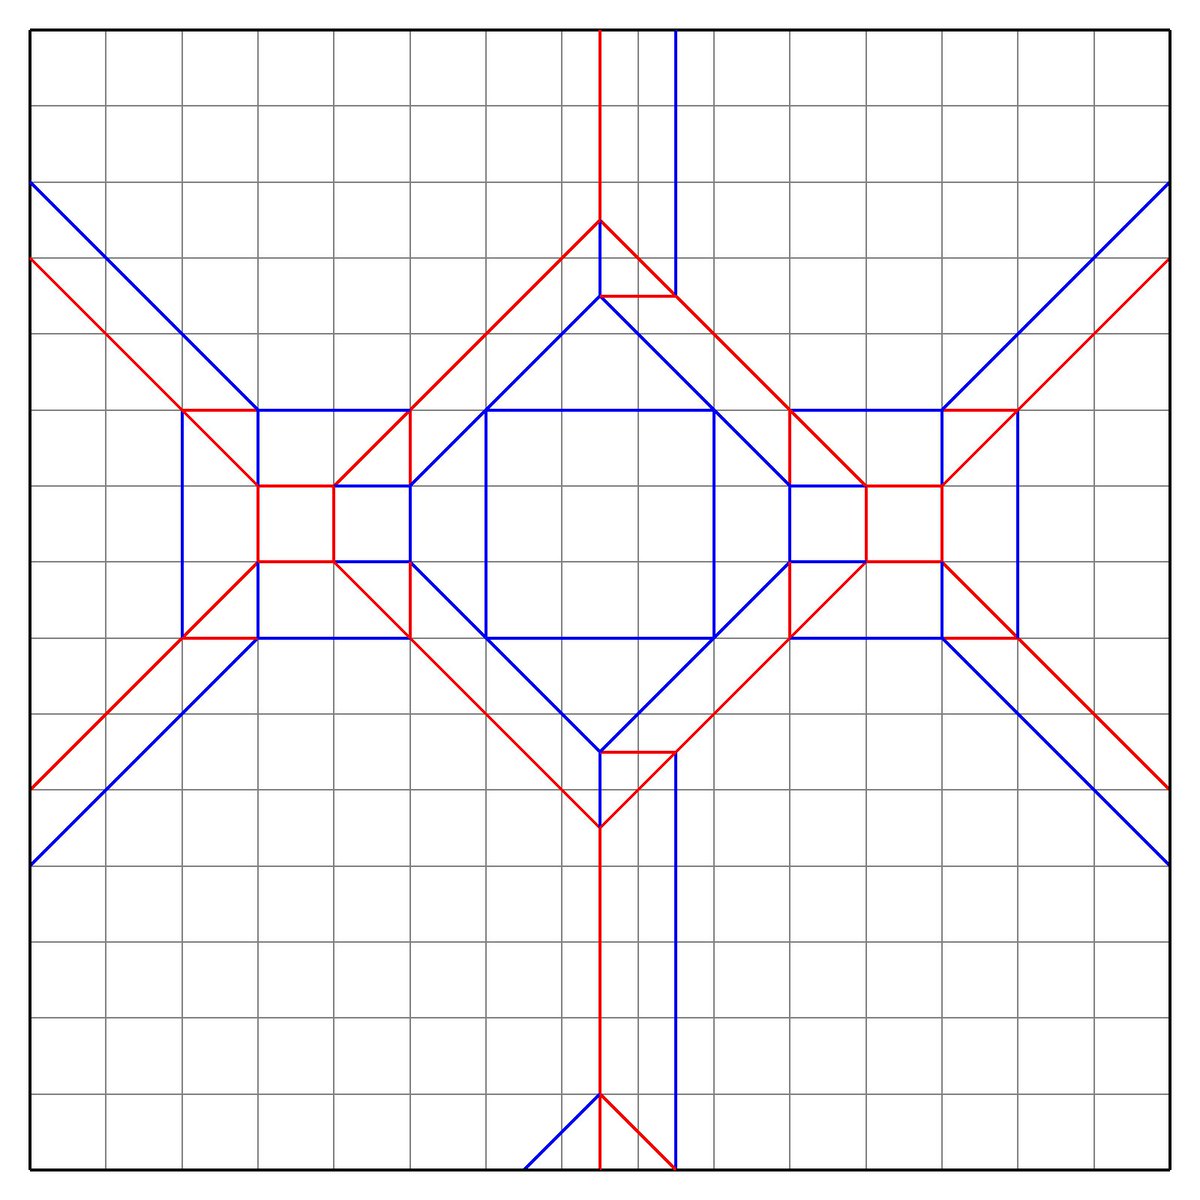 Kenken 2つの面が凹んだ立方体の展開図書きました ざっくり折り手順の説明します まずは15等分 難しいけどなるべく精度高く そして最初の展開図を畳むと写真のように小さい立方体が2つ飛び出ます つづく